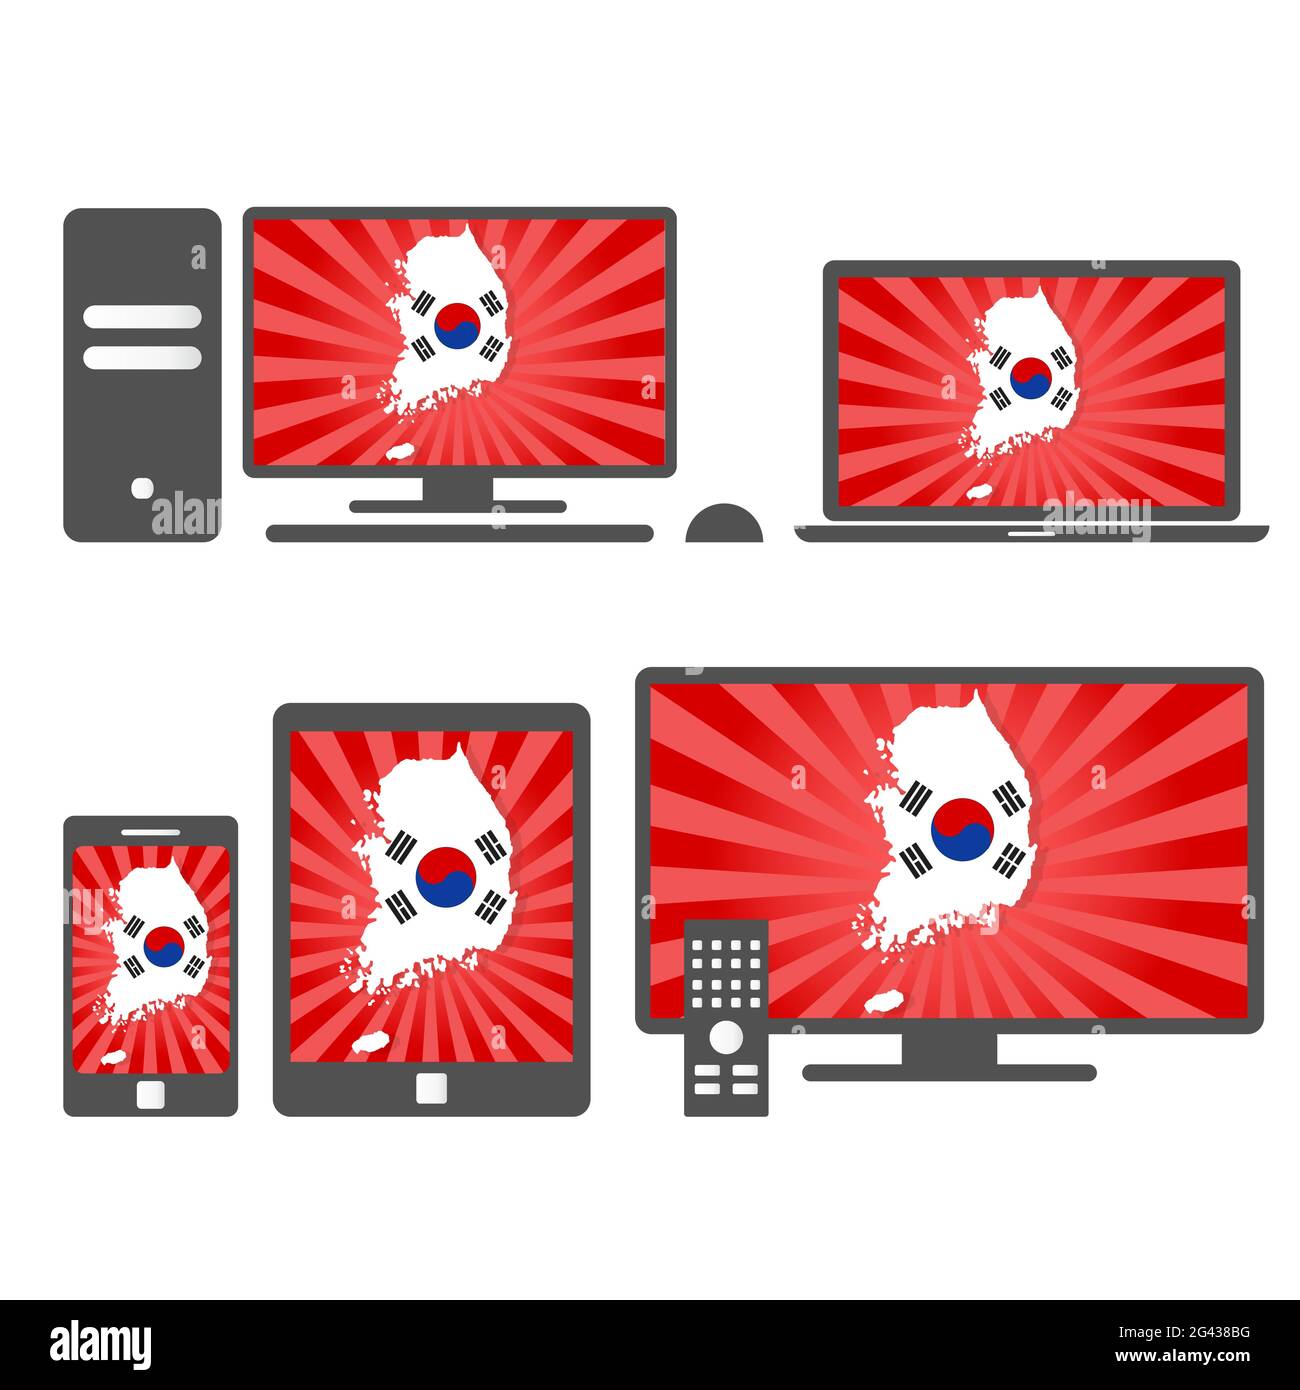 Molti dispositivi multimediali (tablet, pc, cellulare, laptop, smart tv) con la mappa e la bandiera della Corea del Sud. Illustrazione Vettoriale